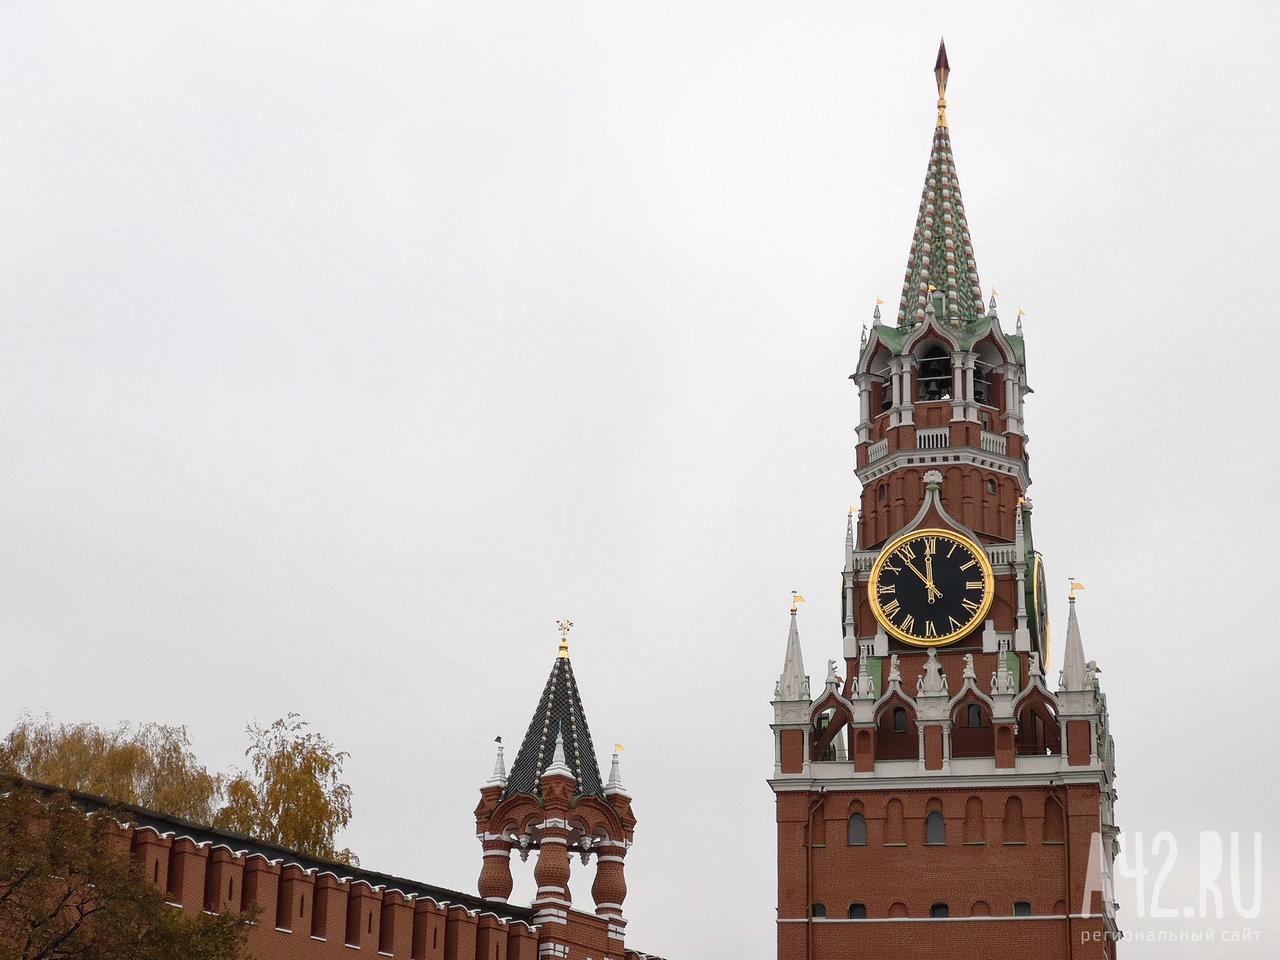 Песков: в Кремле пока не видели письмо с просьбой издать указ о завершении мобилизации